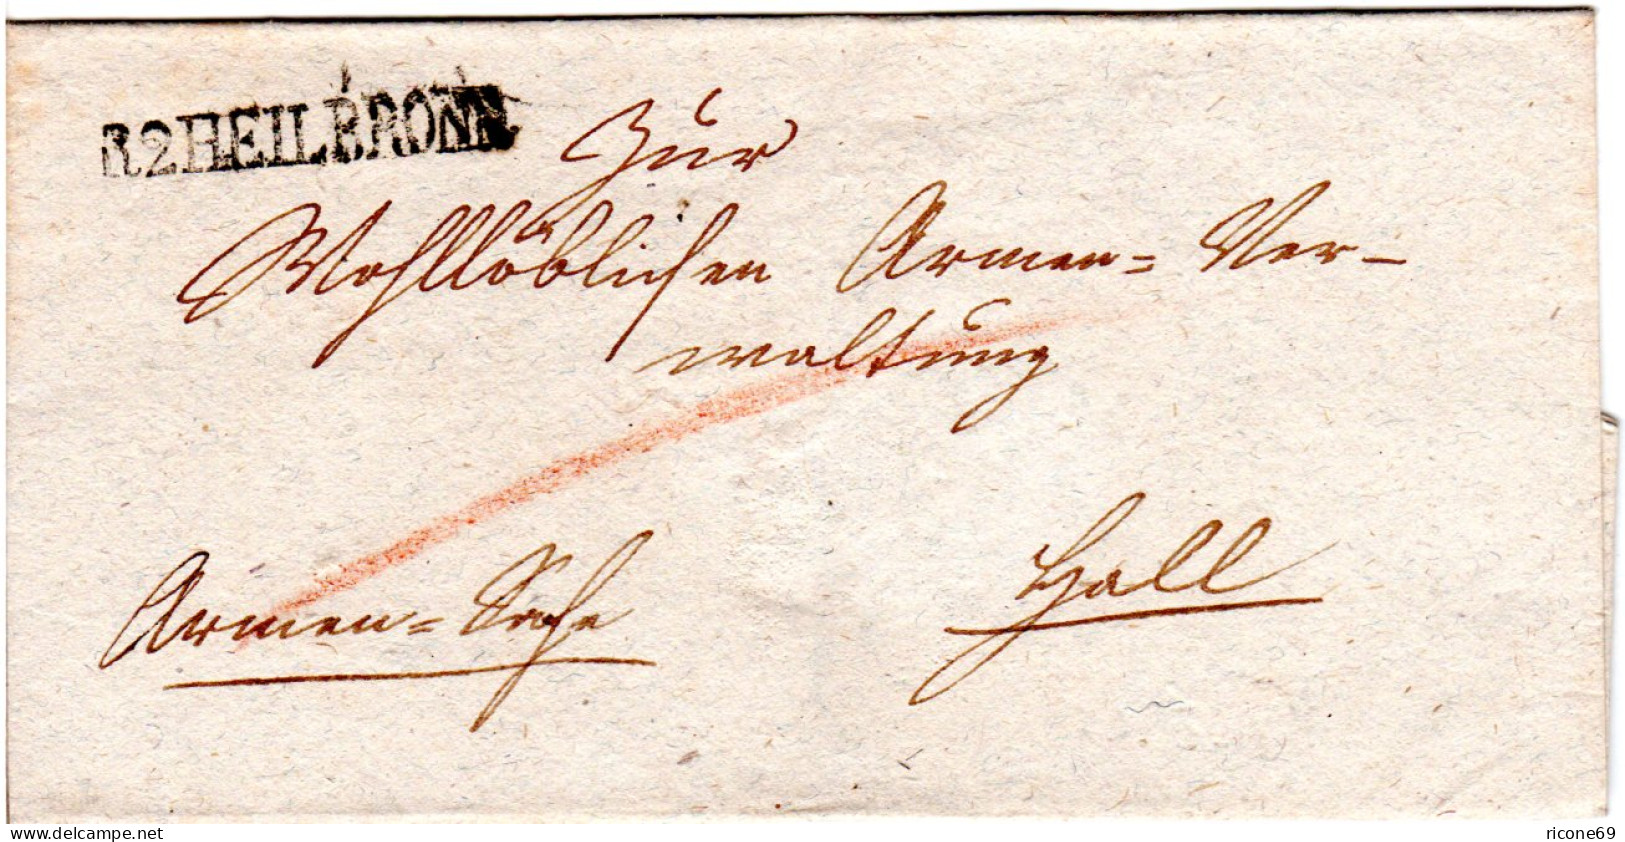 Württemberg, L1 R2 HEILBRONN Auf Armensache Brief N. Hall. - Prefilatelia